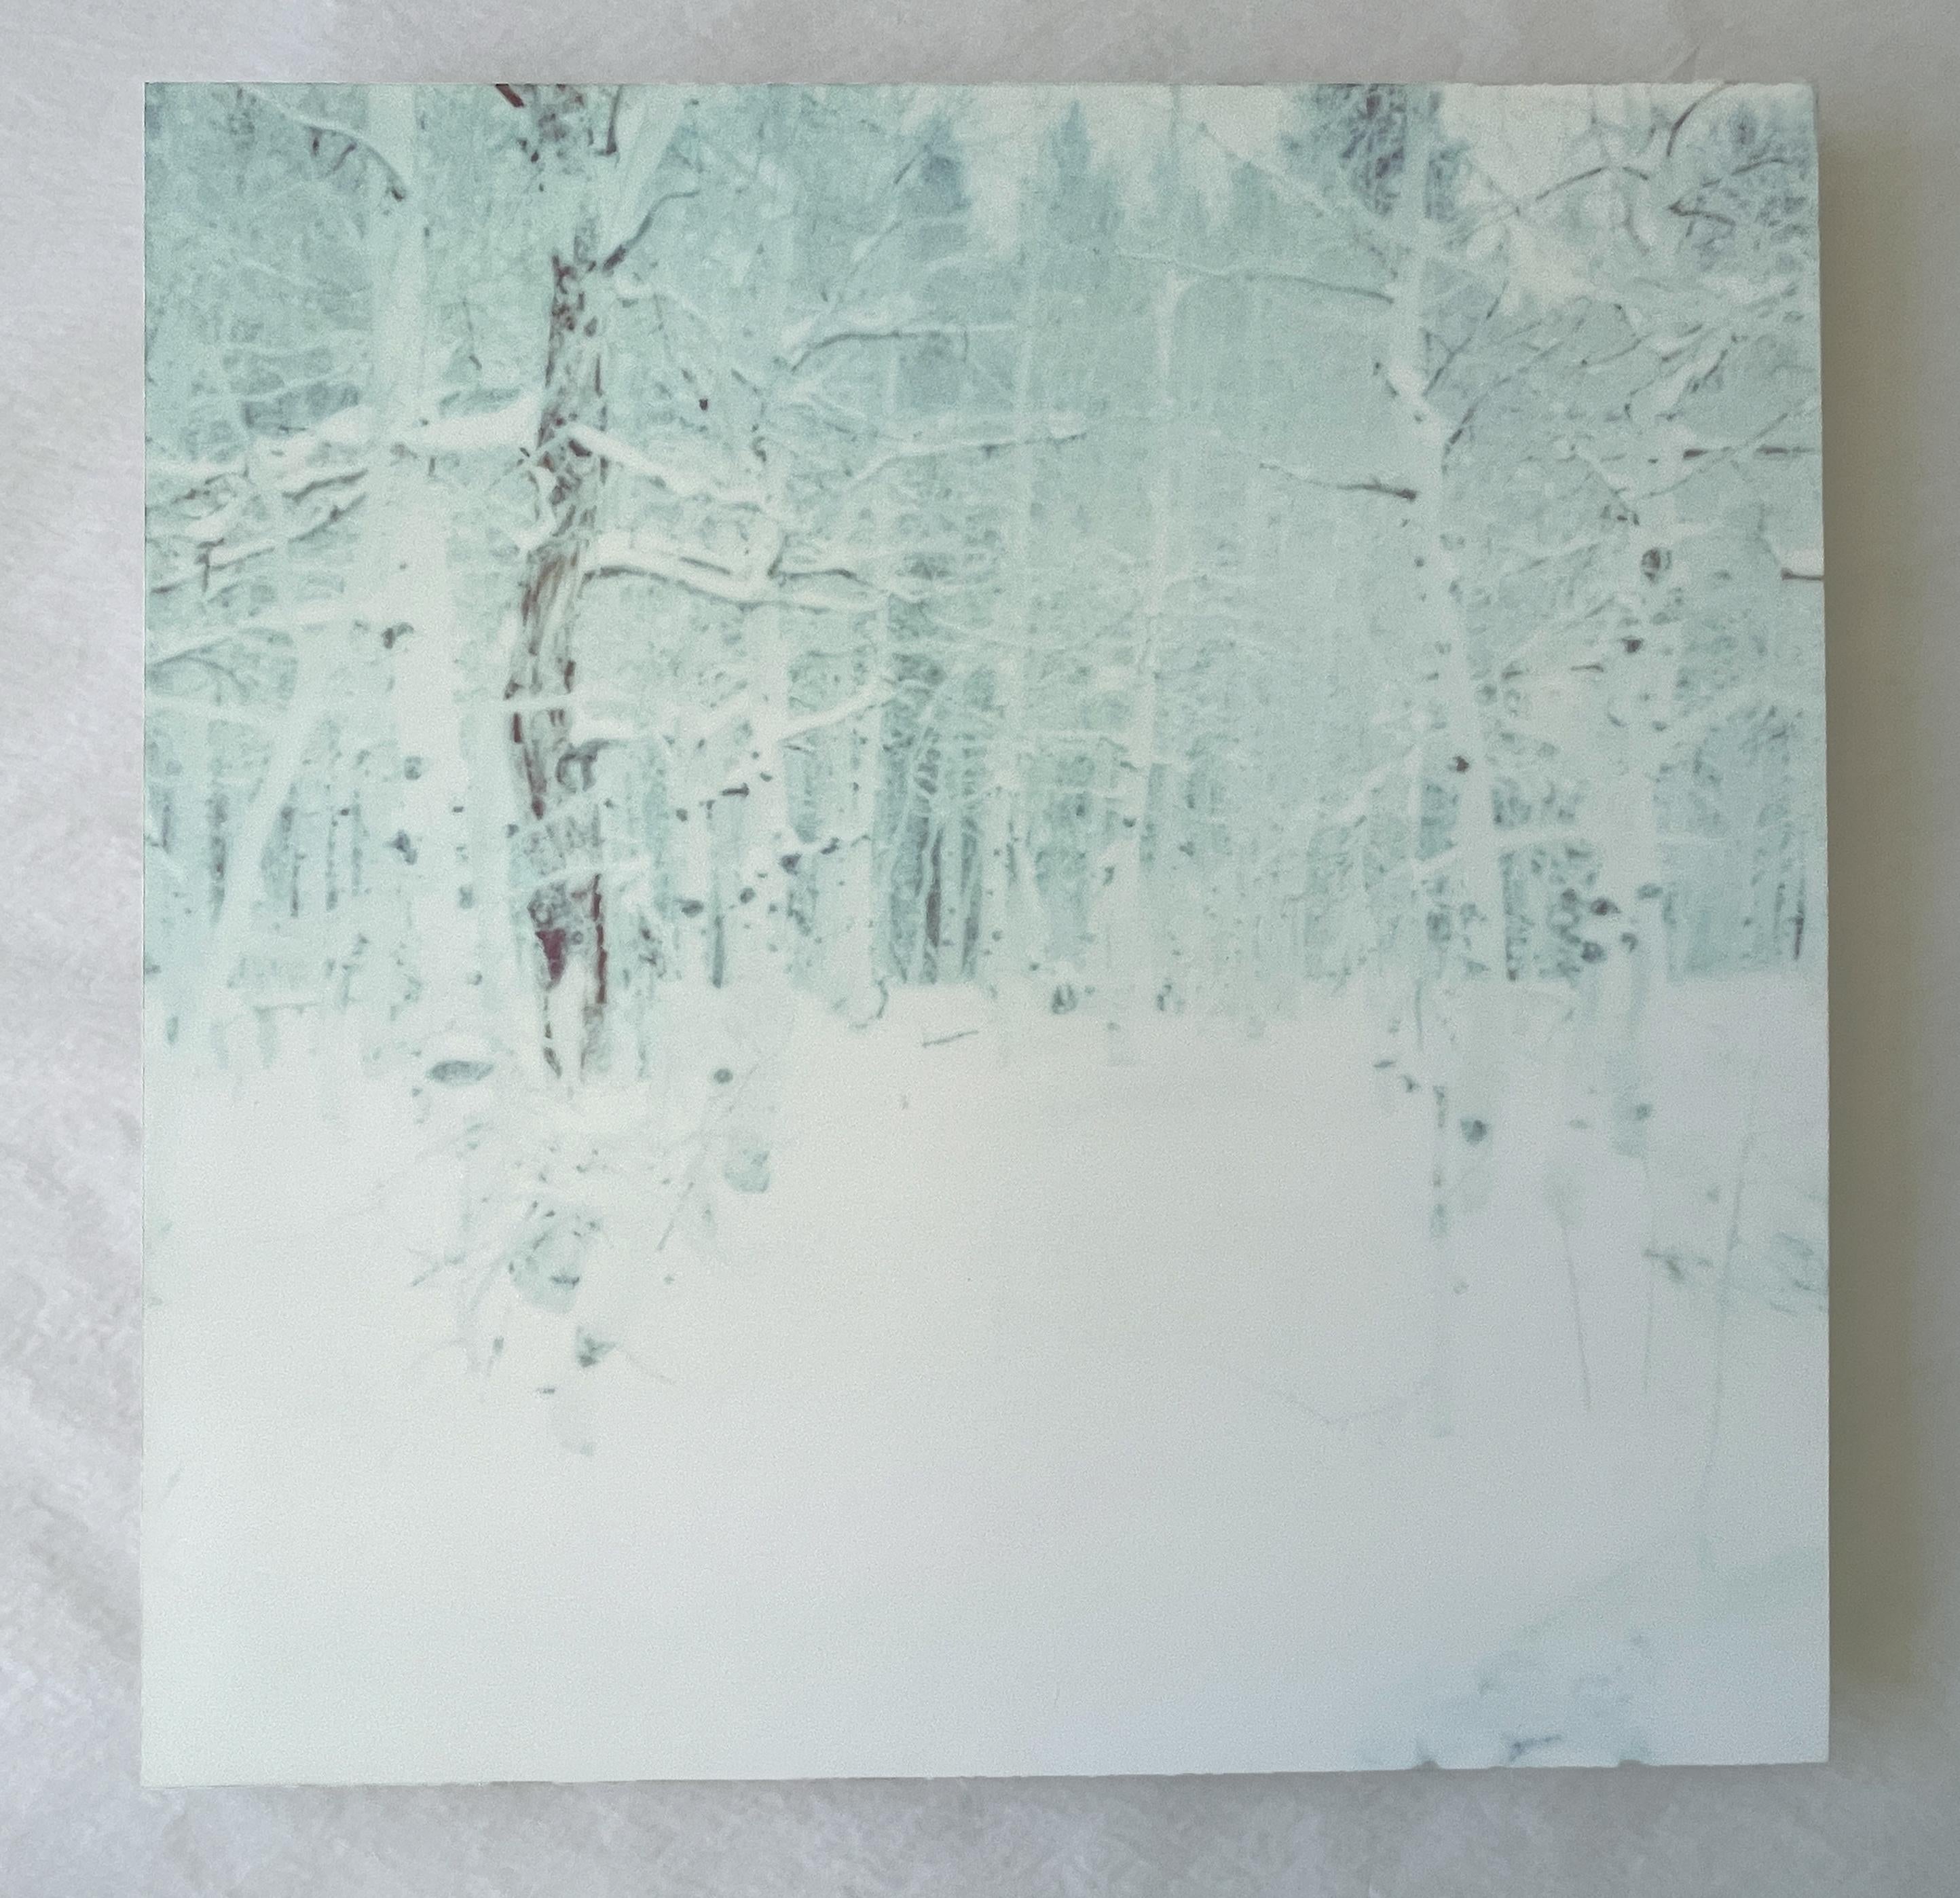 Stefanie Schneider Landscape Photograph - Winter (Wastelands) - Contemporary, Landscape, Polaroid - analog, mounted